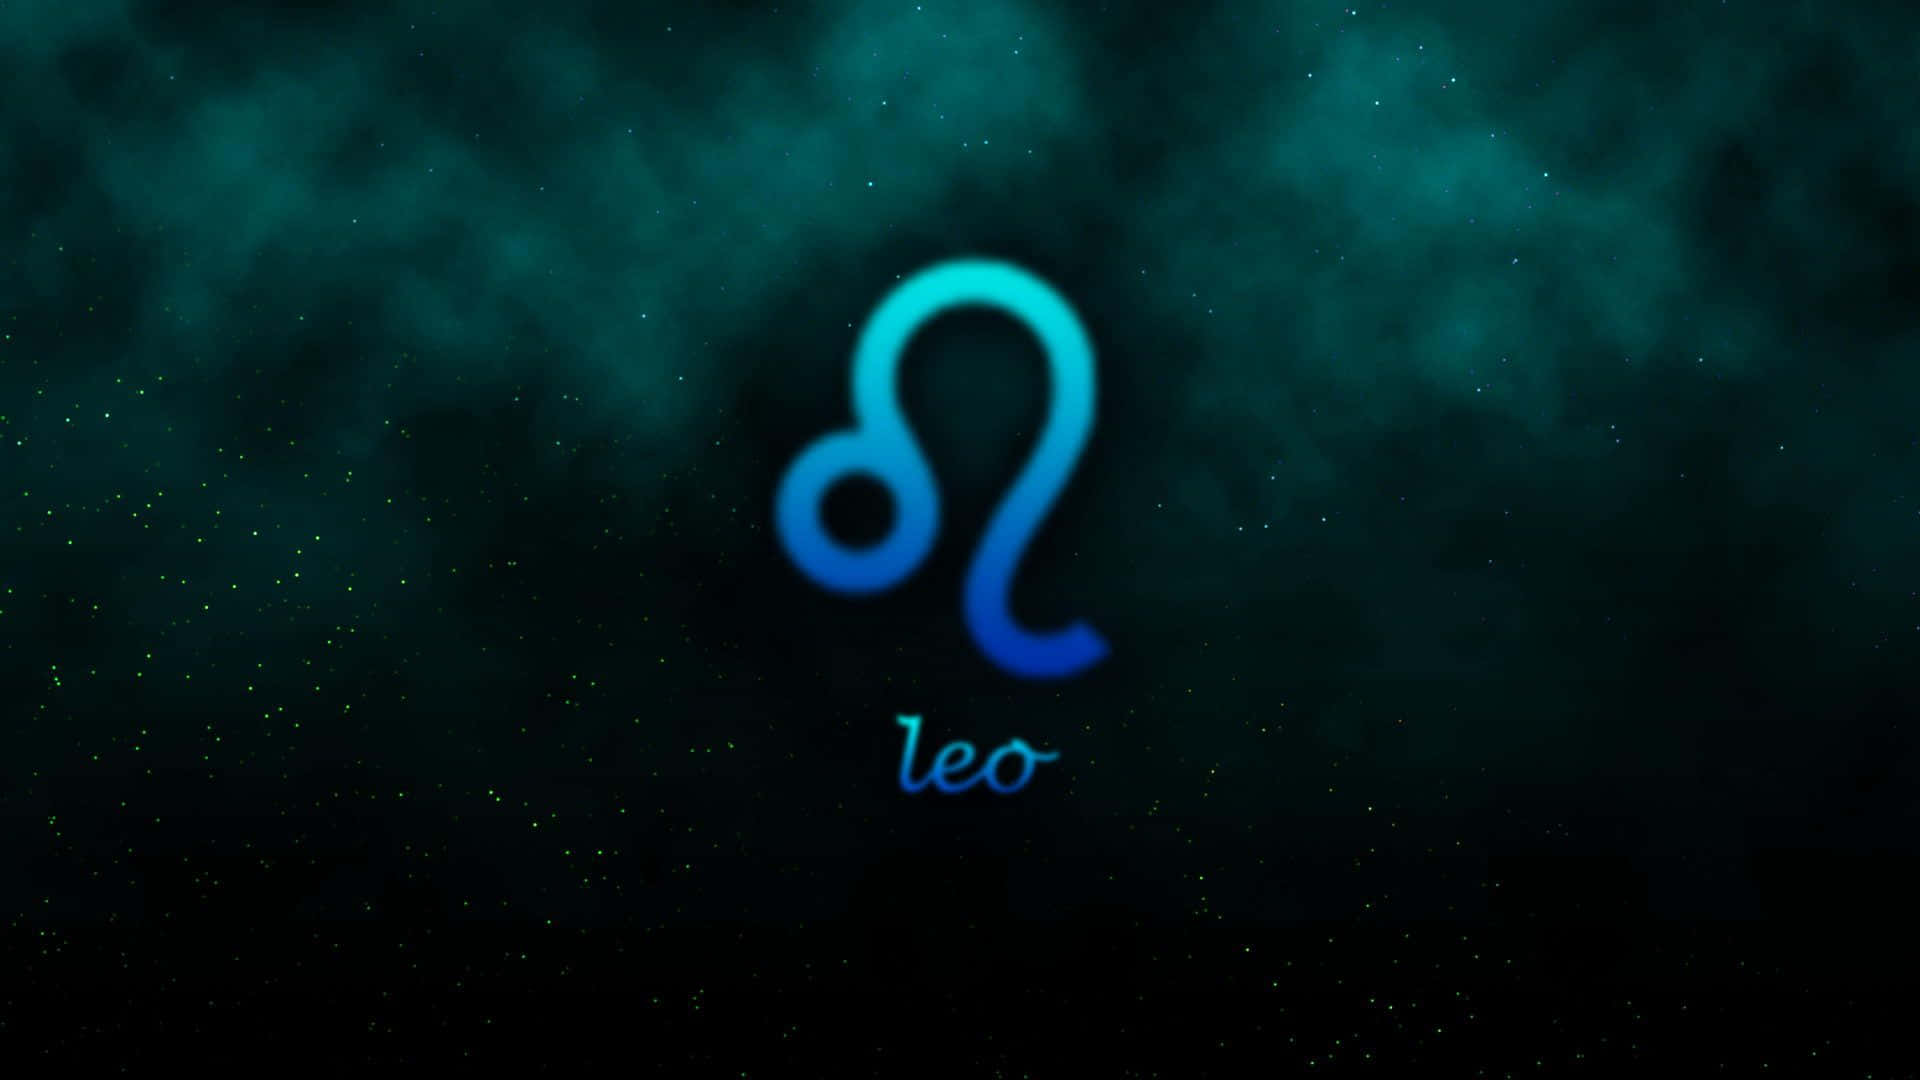 Leo Zodiac Sign Stars And Mist Wallpaper